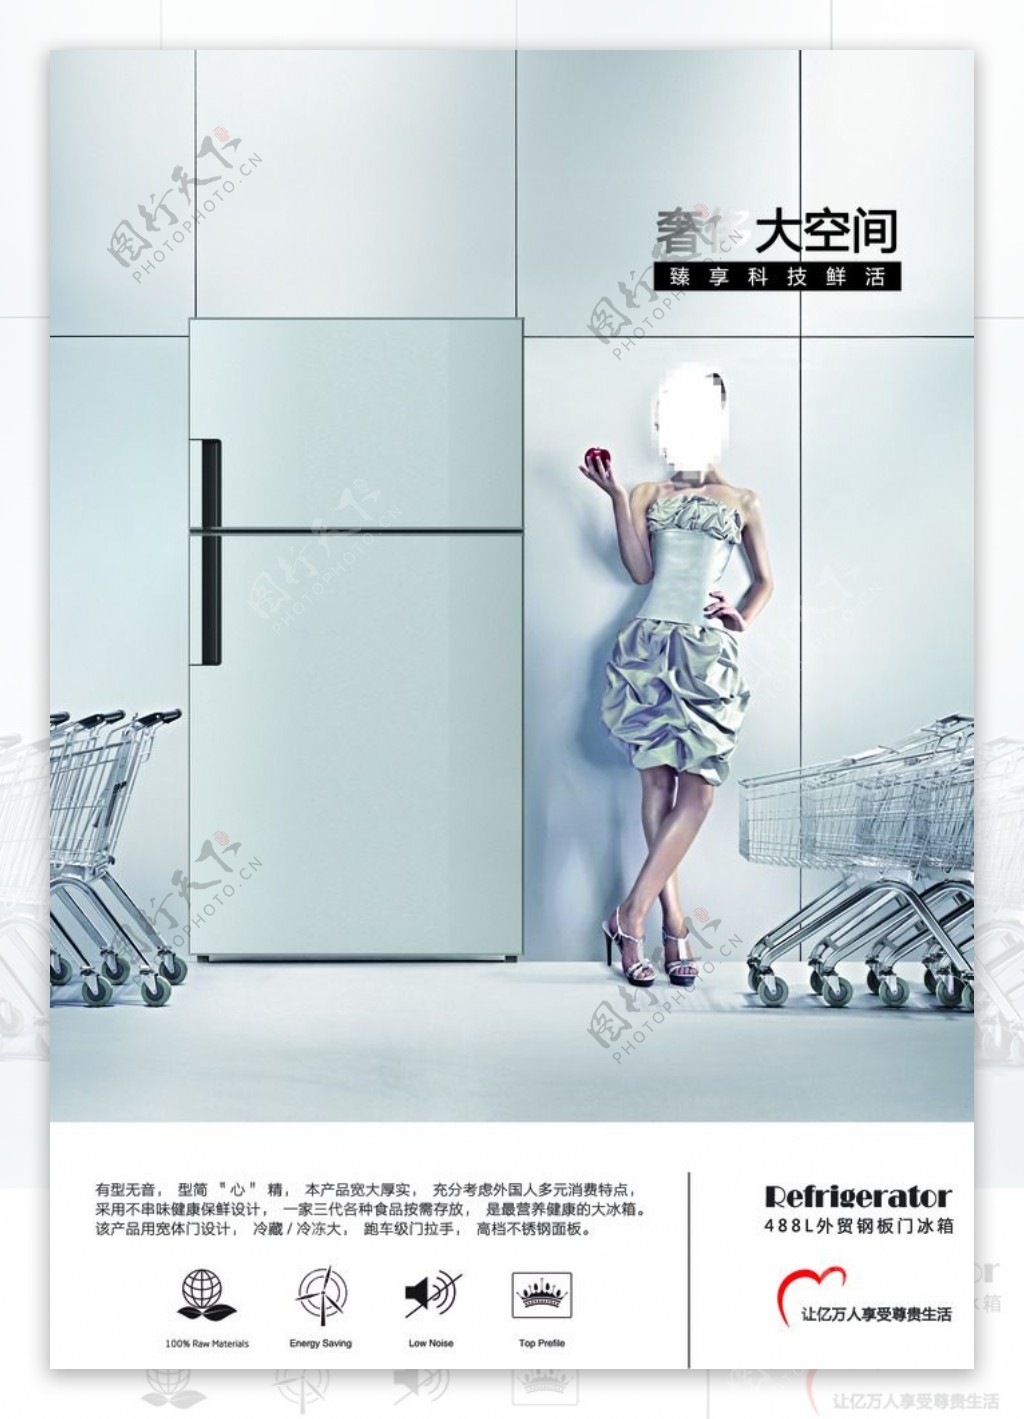 冰箱宣传海报